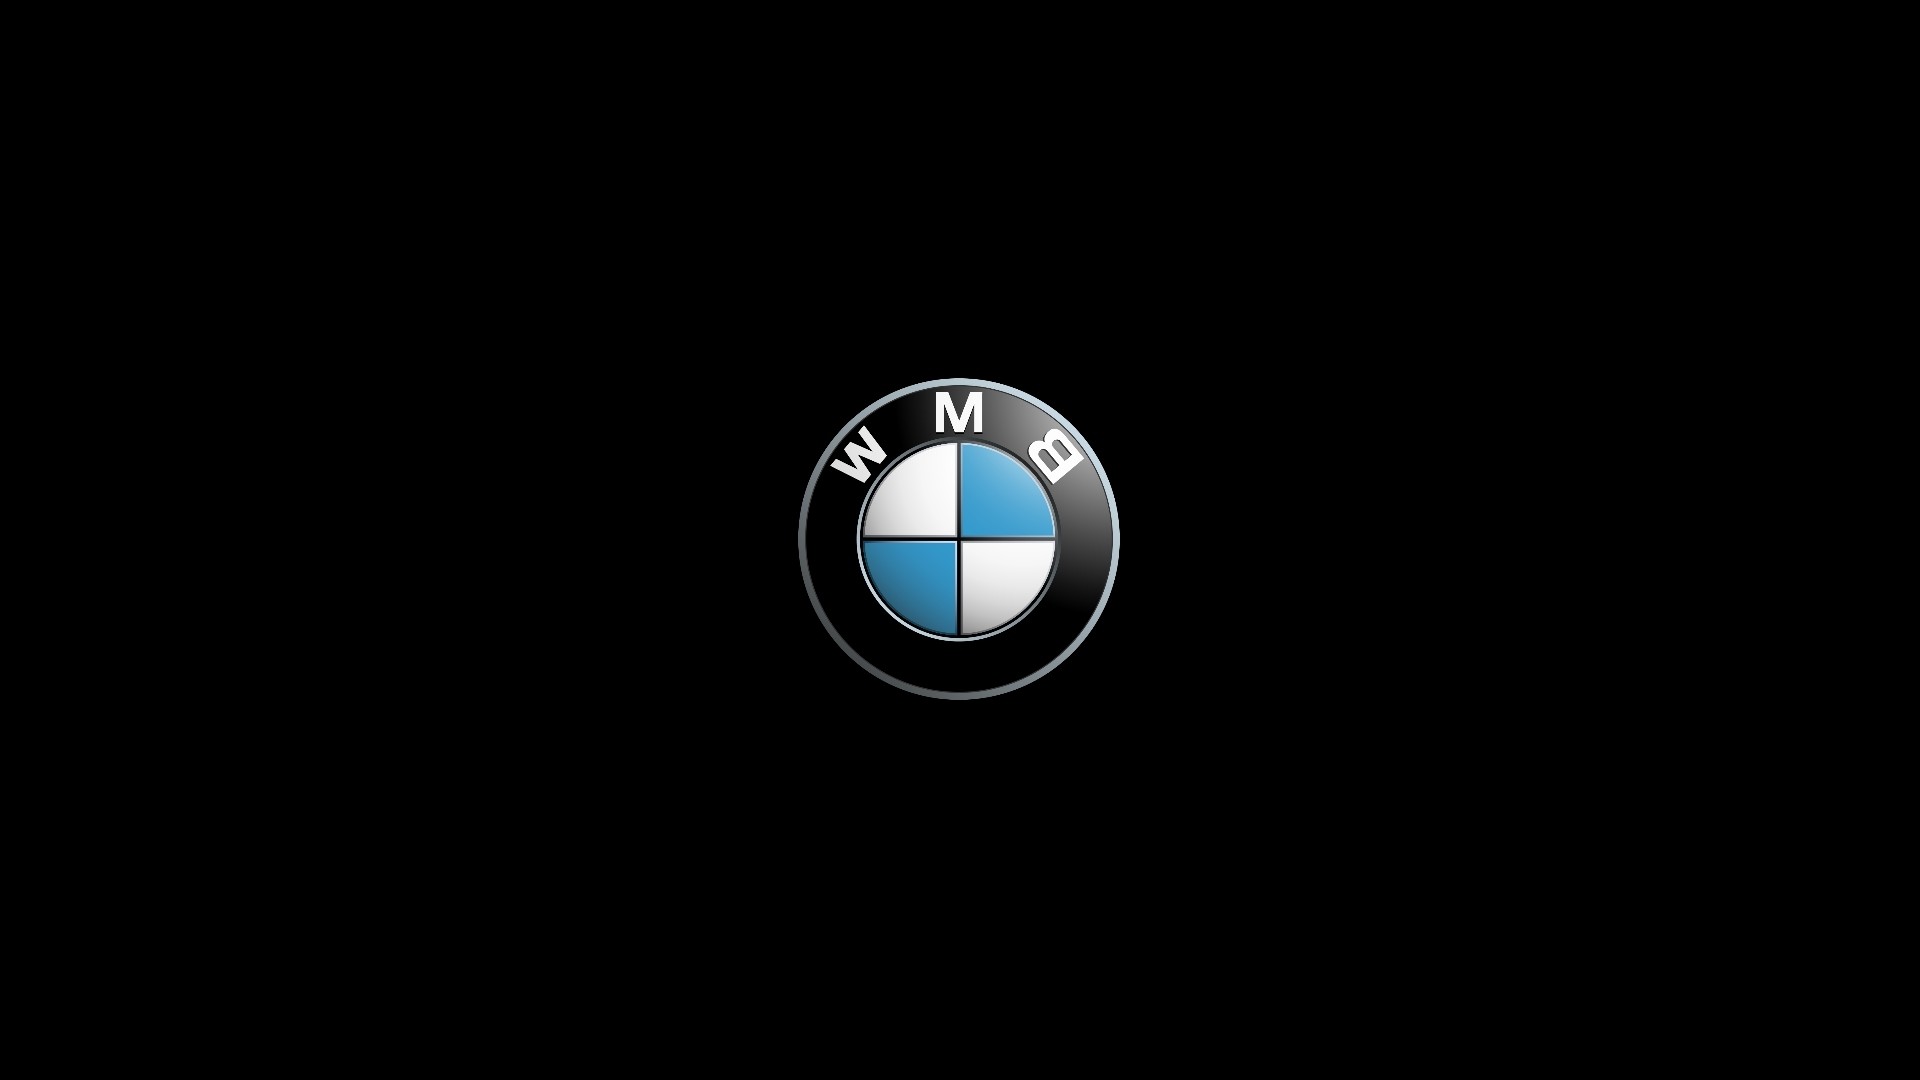 1920x1080 BMW Logo Wallpaper Free Download BMW Logo Wallpaper Full HD